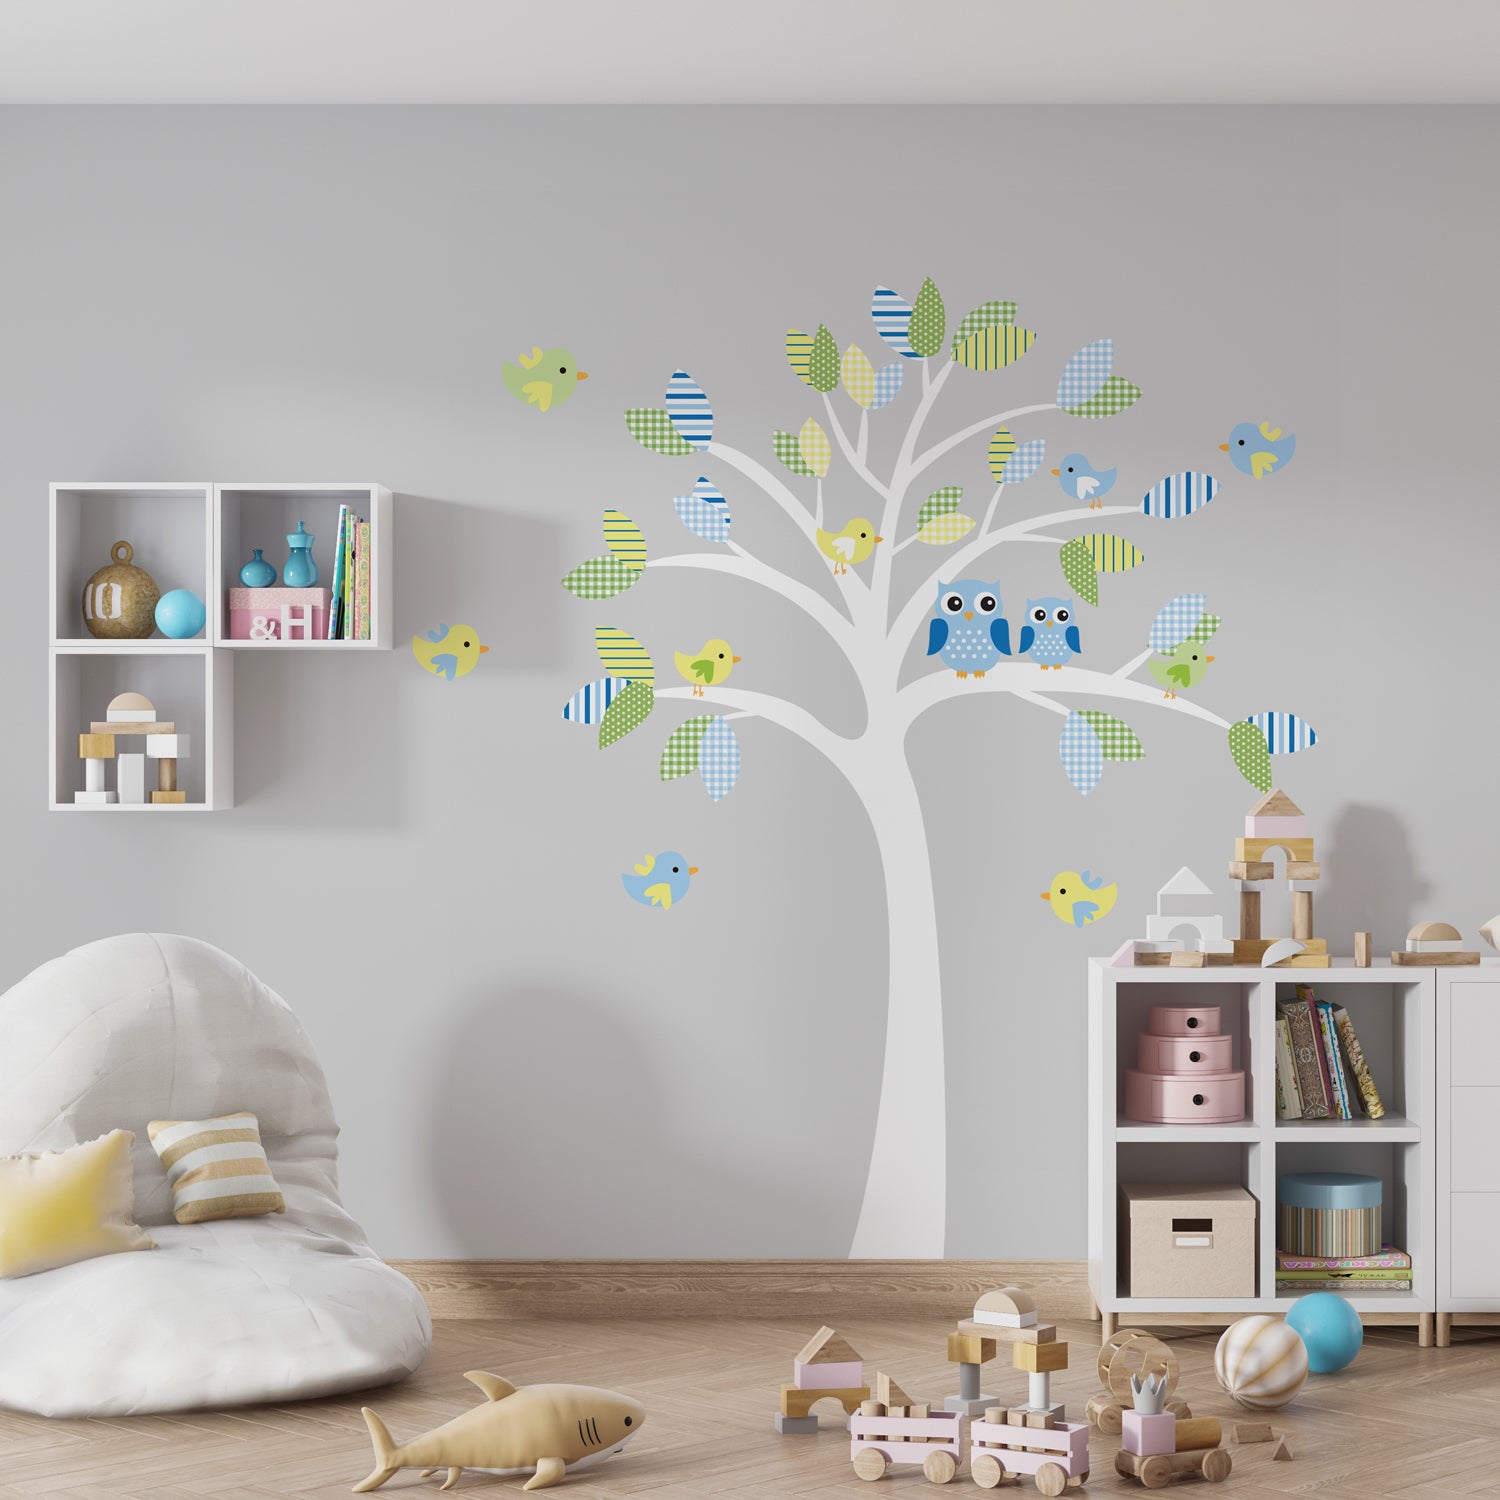 Adesivo Decorativo de Parede com Árvore Infantil CANDY TREE MENINO